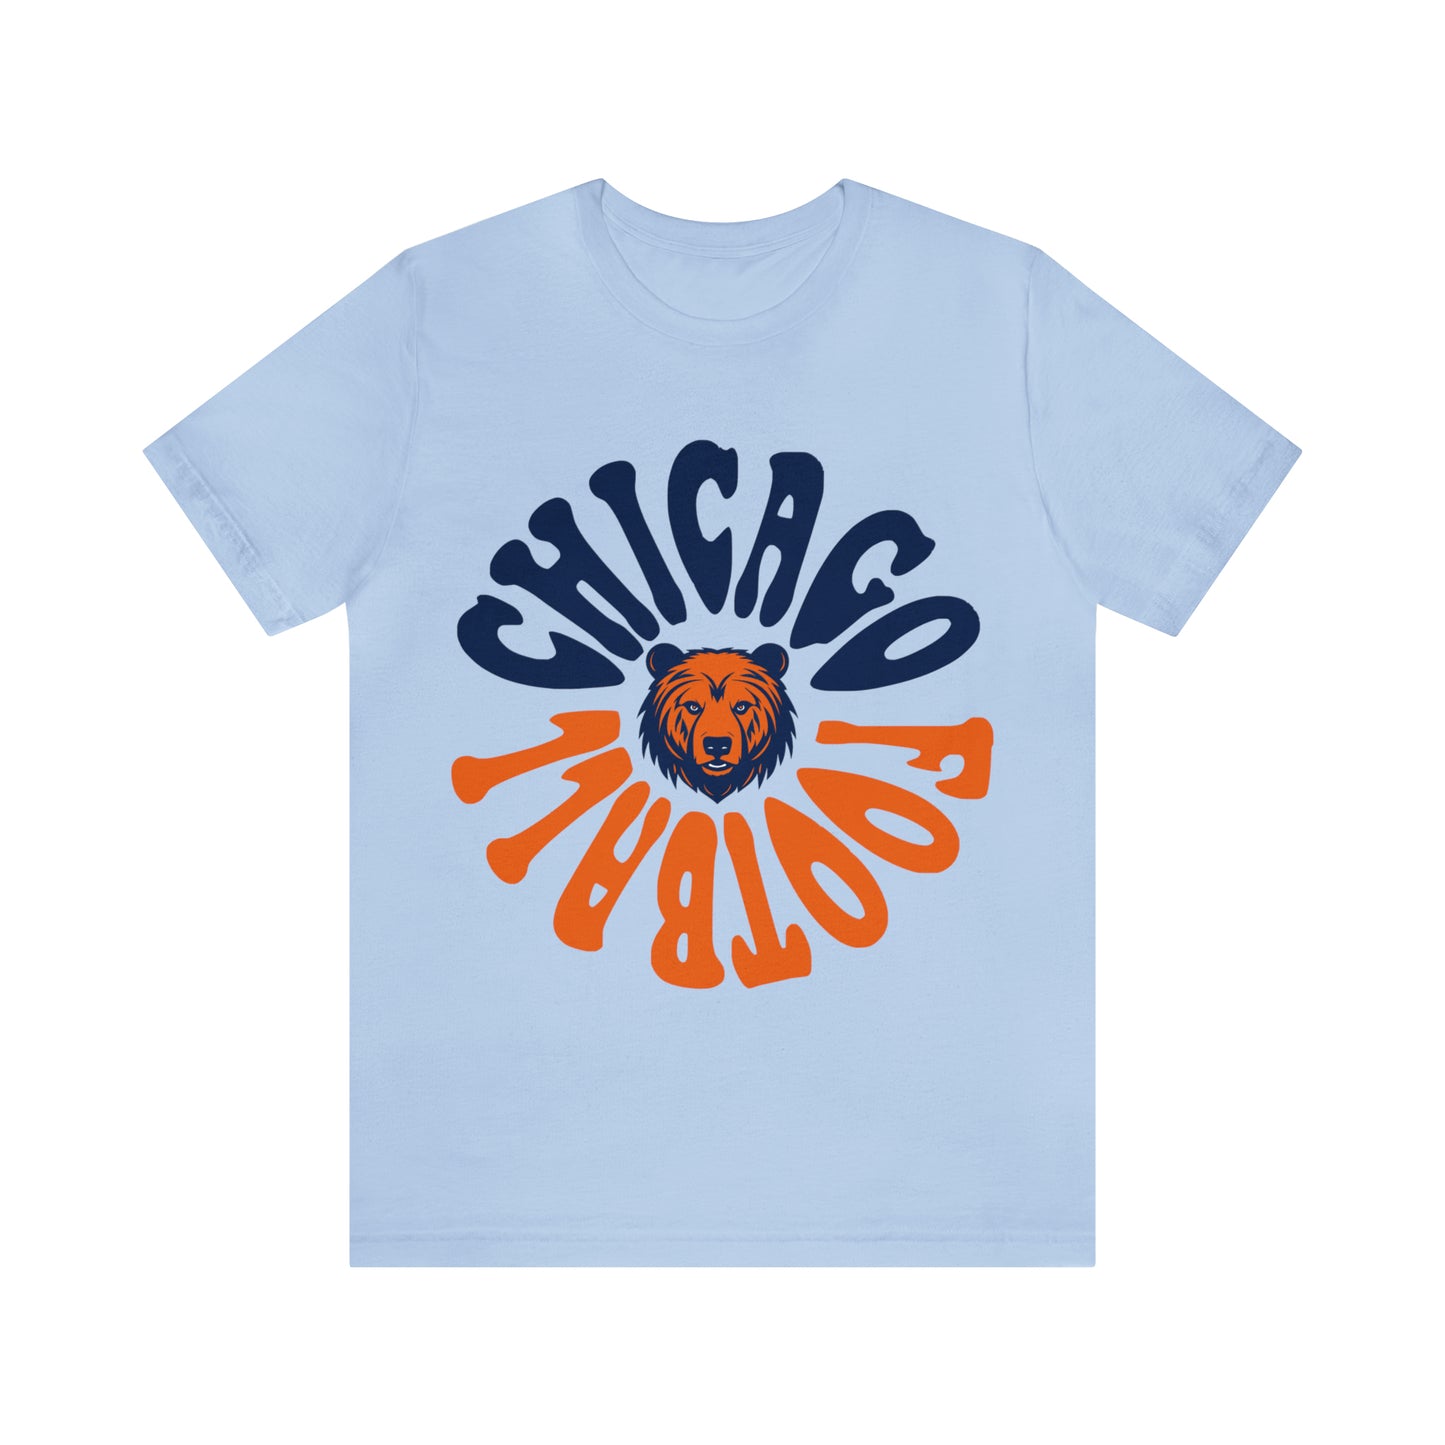 Chicago Bears Football Short Sleeve T-Shirt - Hippy Retro Men's & Women's Oversized Tee - Design 2